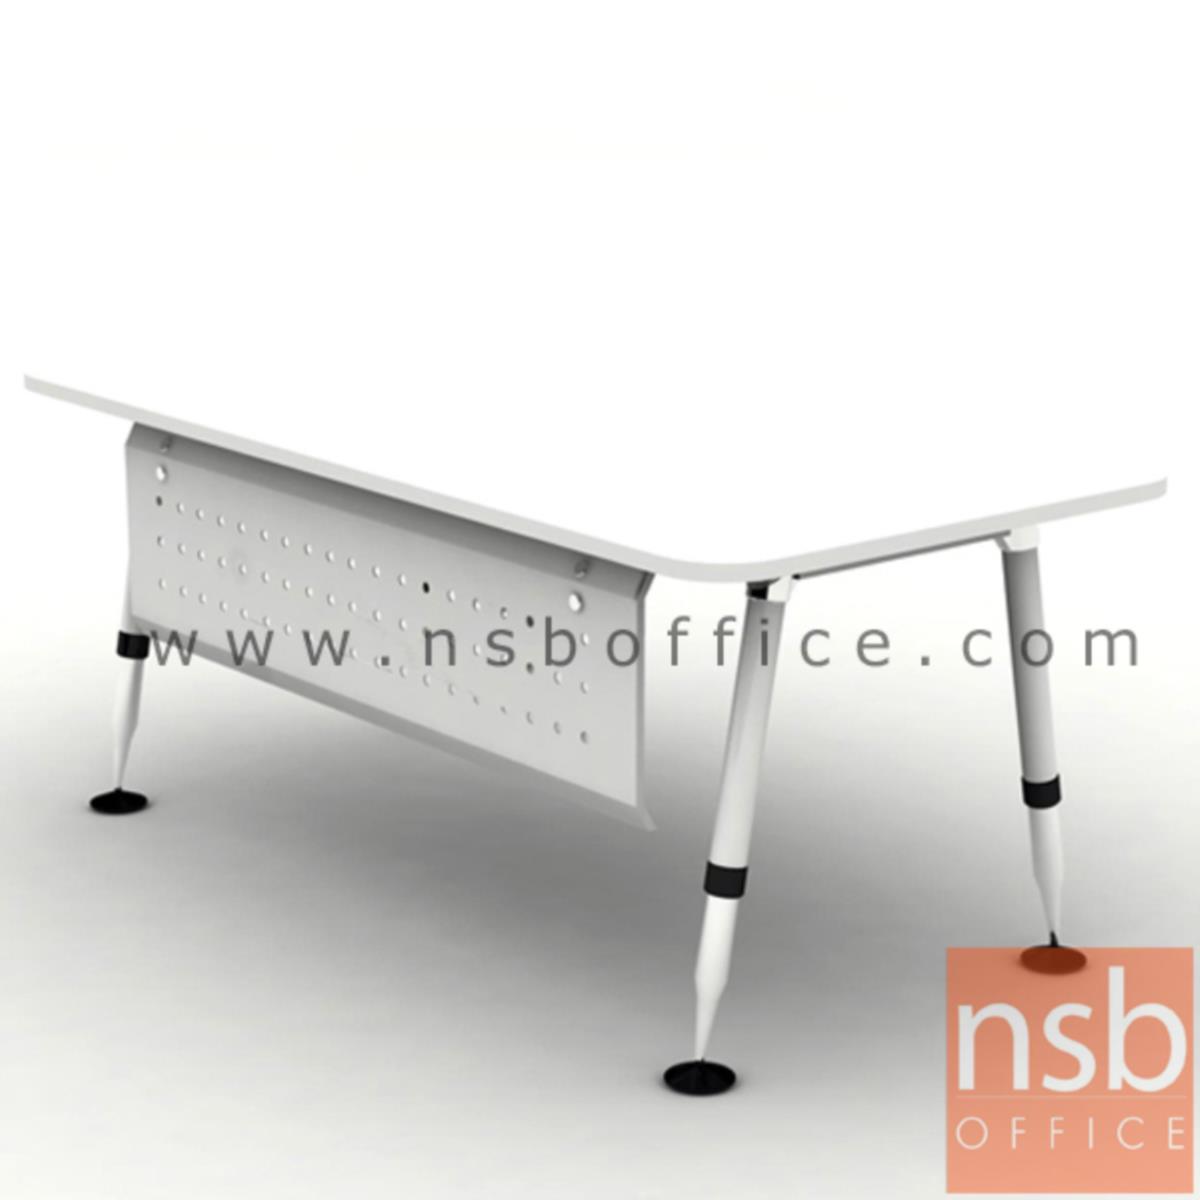 โต๊ะผู้บริหารทรงสี่เหลี่ยม รุ่น HB-DK04-1890  ขนาด 180W cm. ขาเหล็กสีขาวปลายโครเมียม